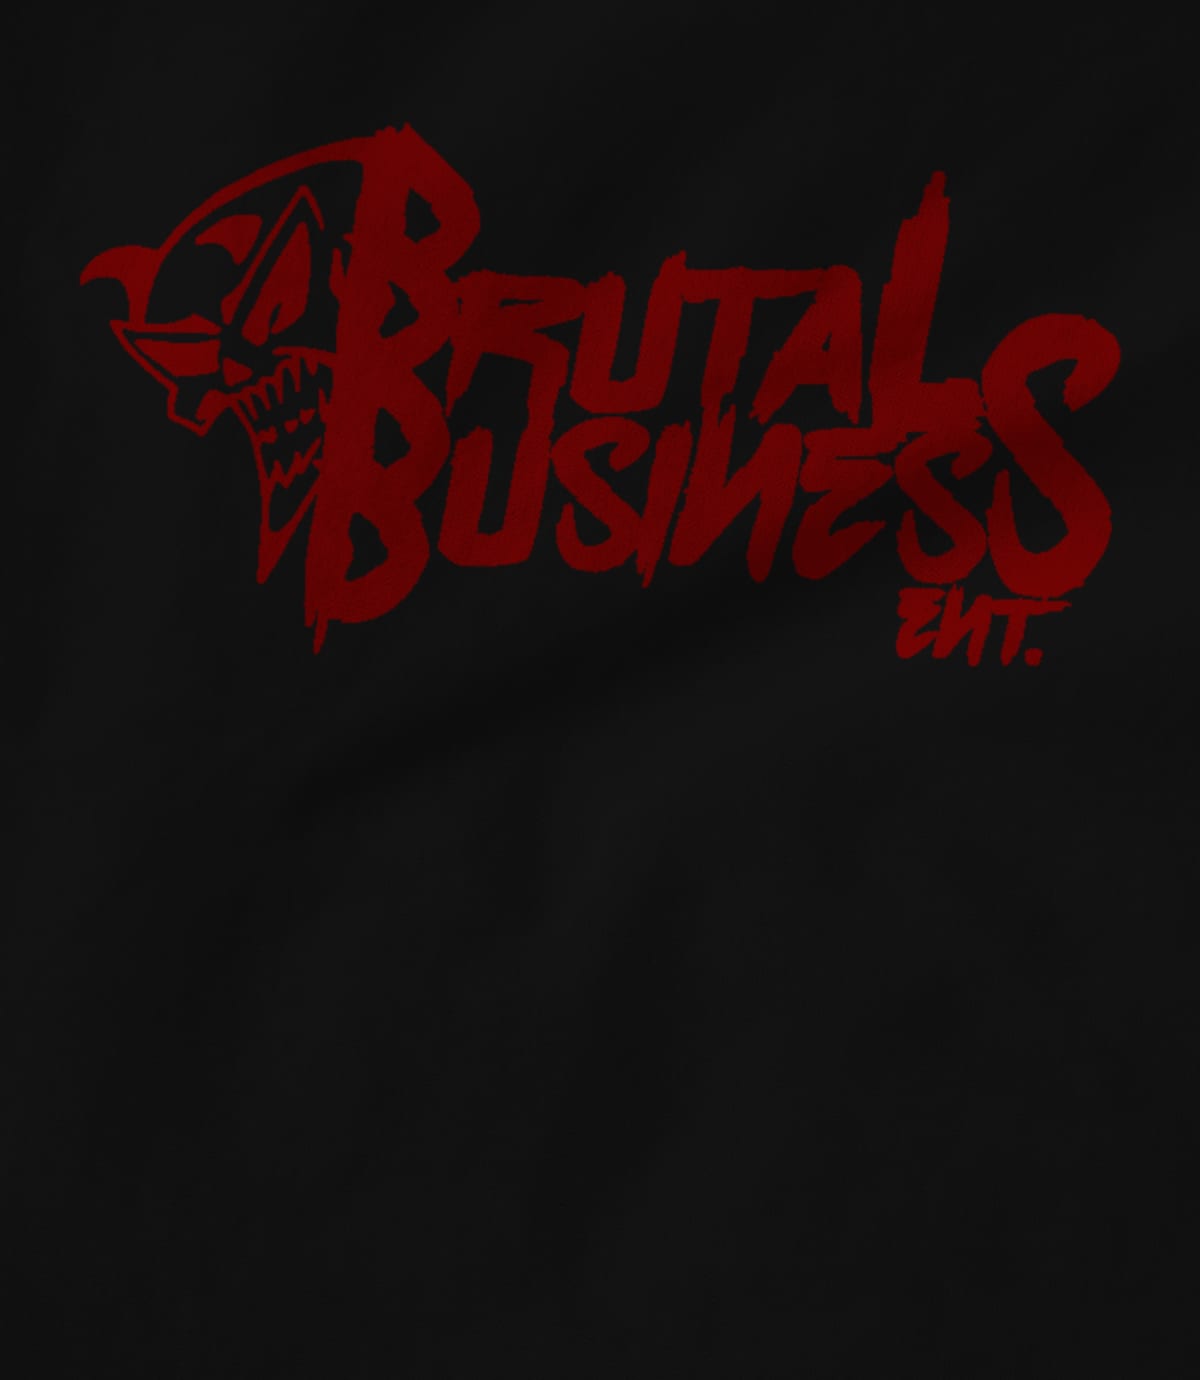 Brutal business ent brutal business  black  1595802887